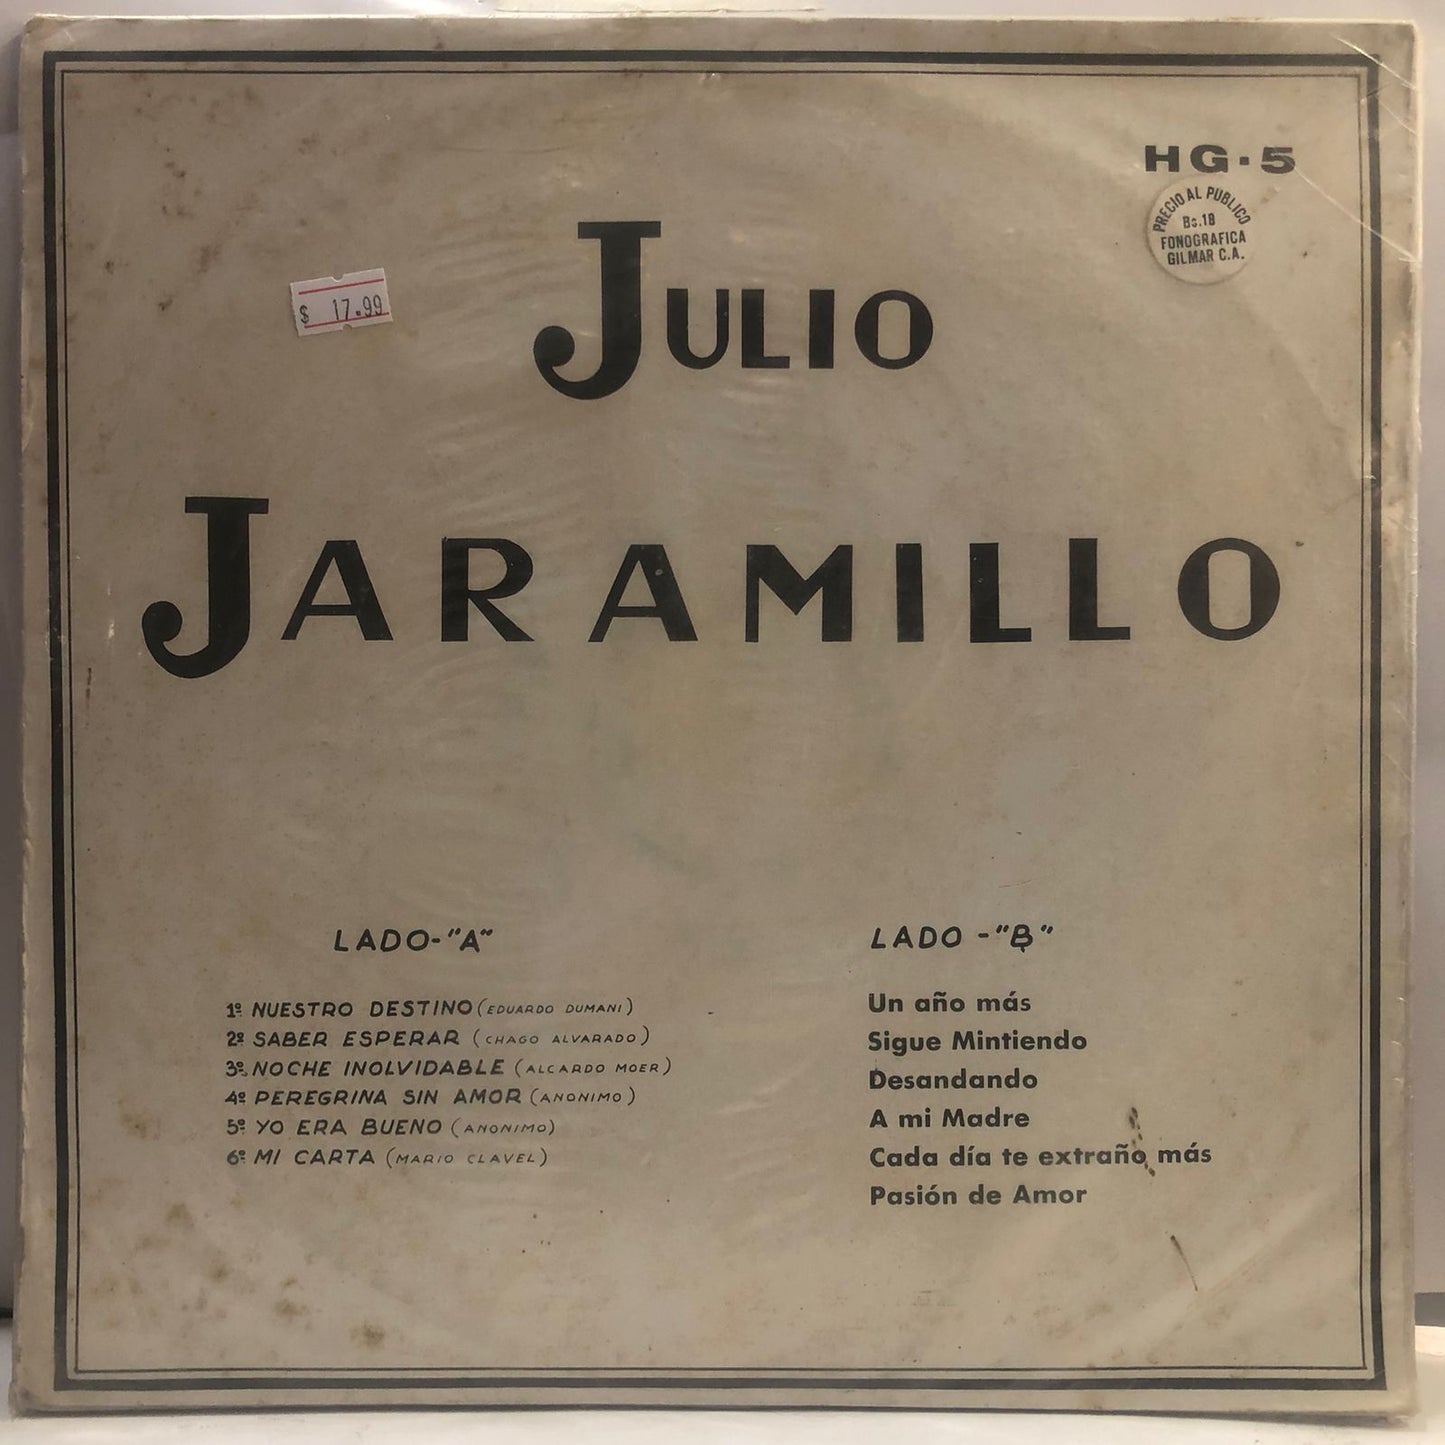 JULIO JARAMILLO - JULIO  LP